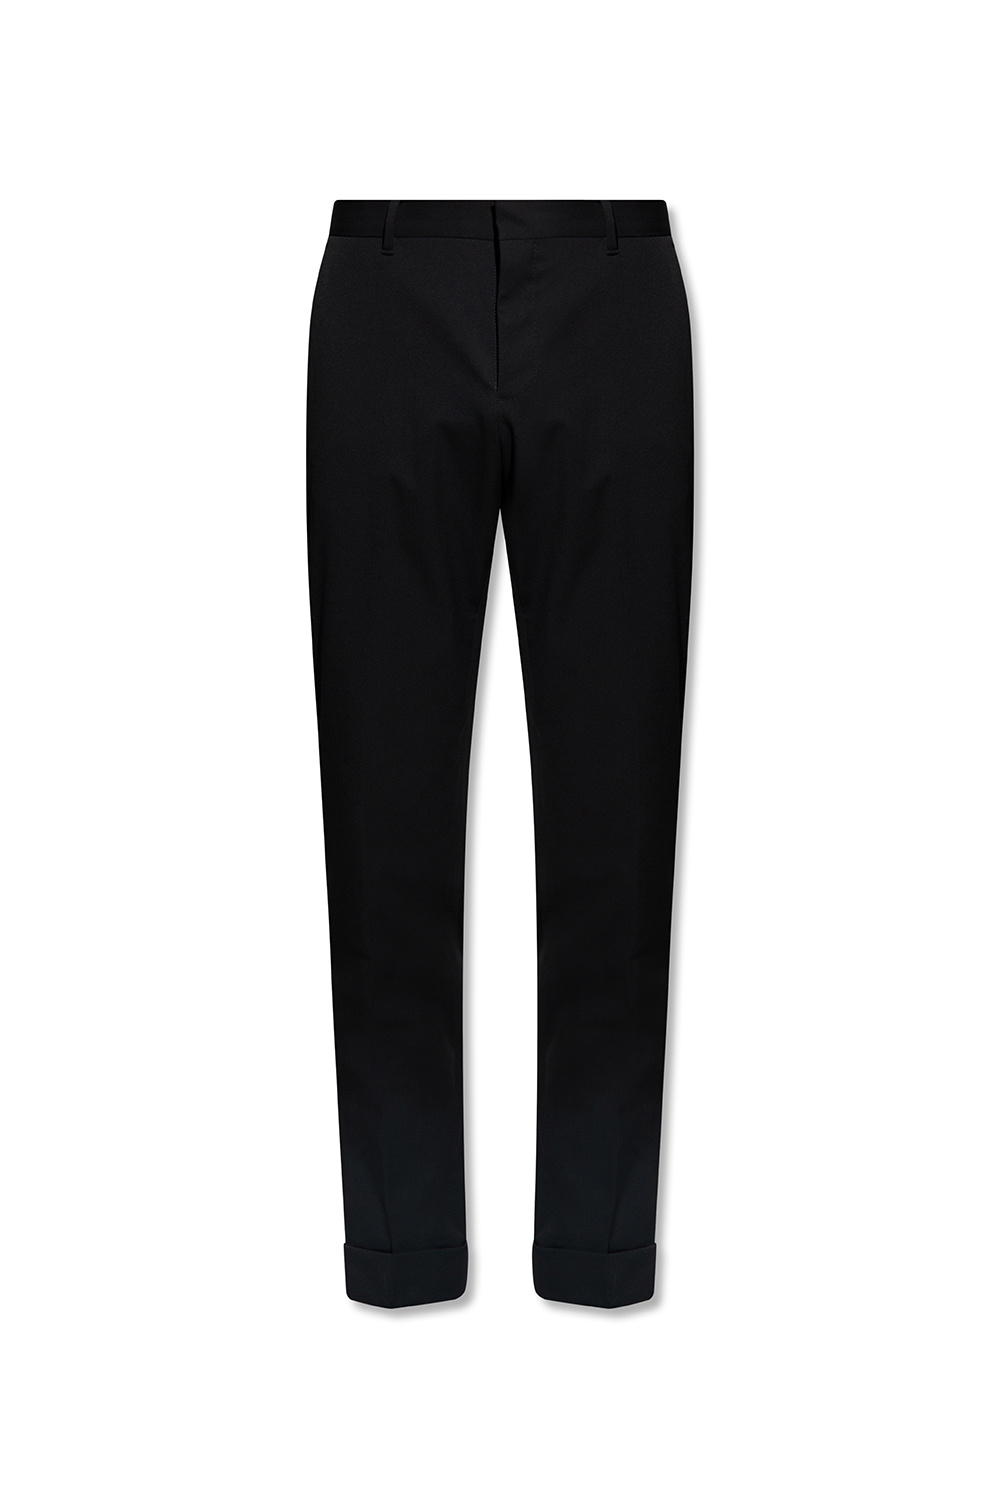 AllSaints ‘Myk’ pleat-front trousers